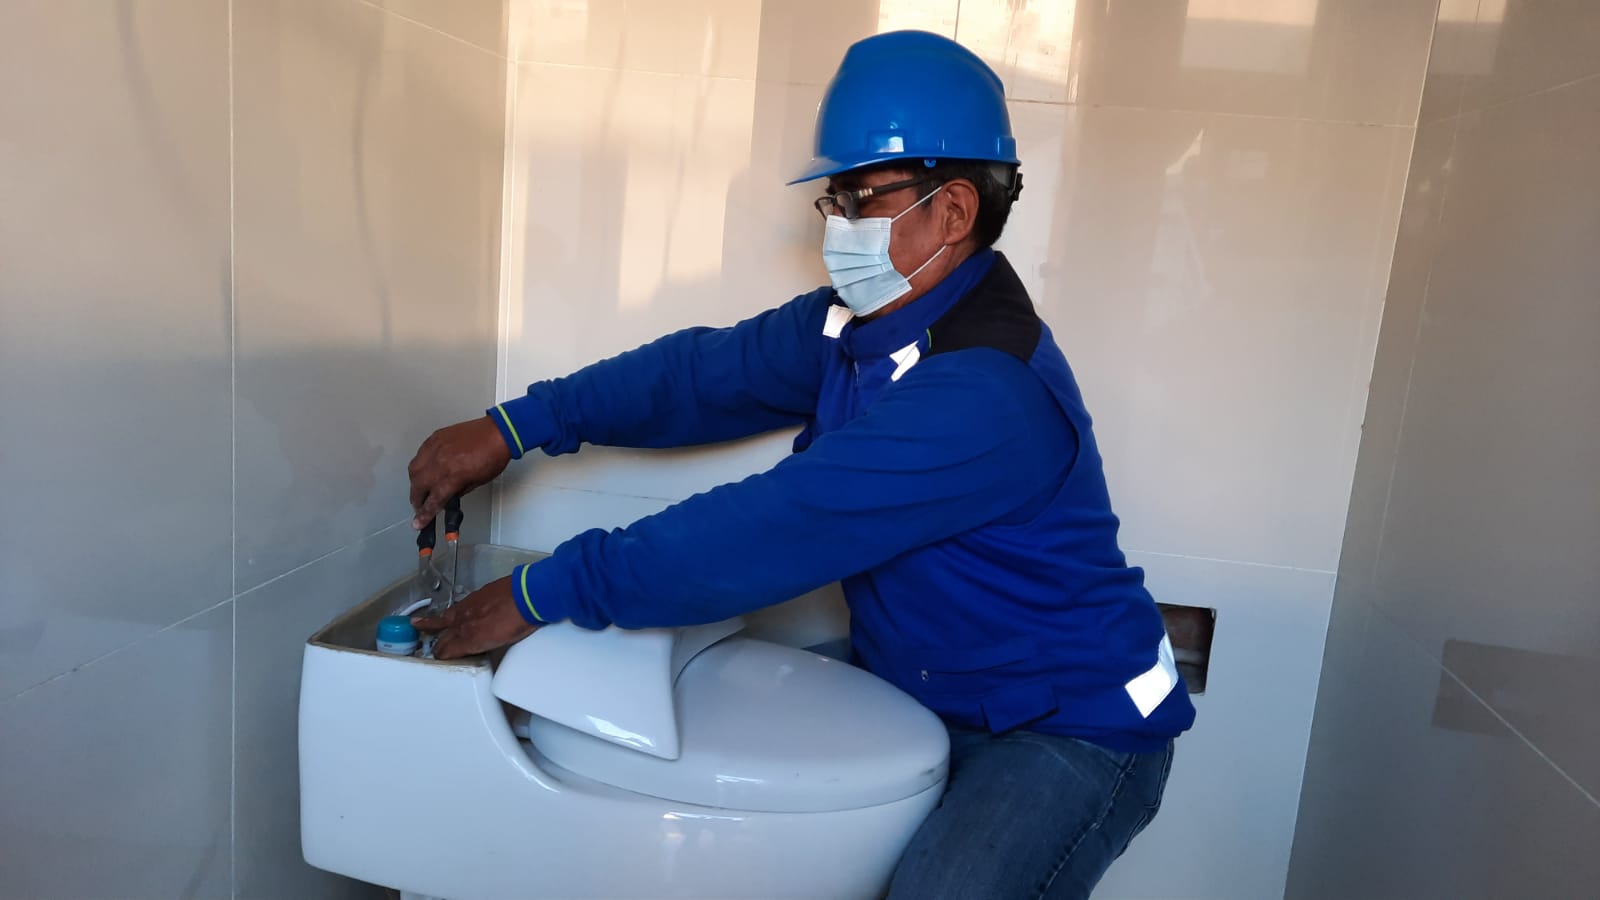 Lanzan campaña Gasfitero en el Hogar para reparar fugas en conexiones de agua potable